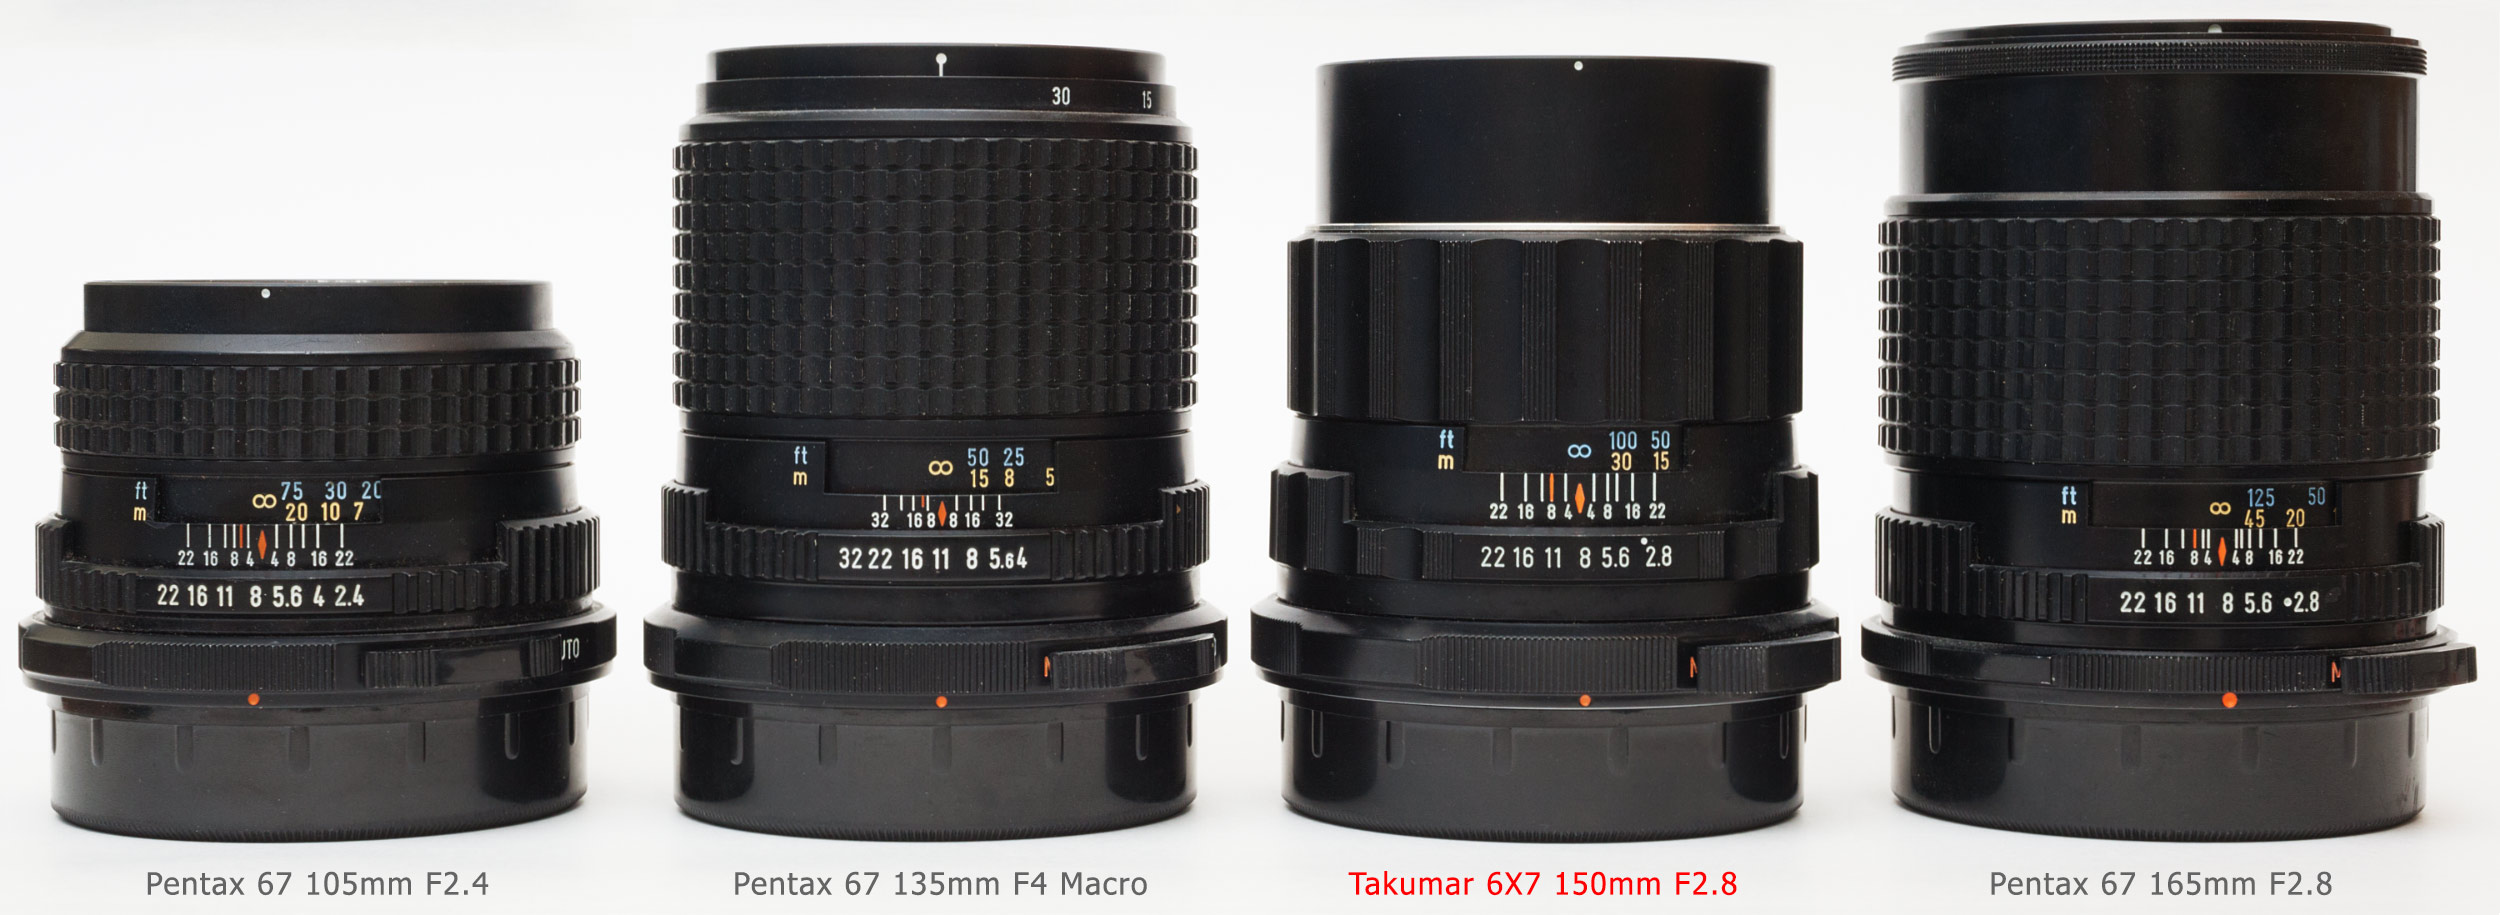 Takumar 6X7 150mm F2.8: Lens review, Details, Bokeh, Samples